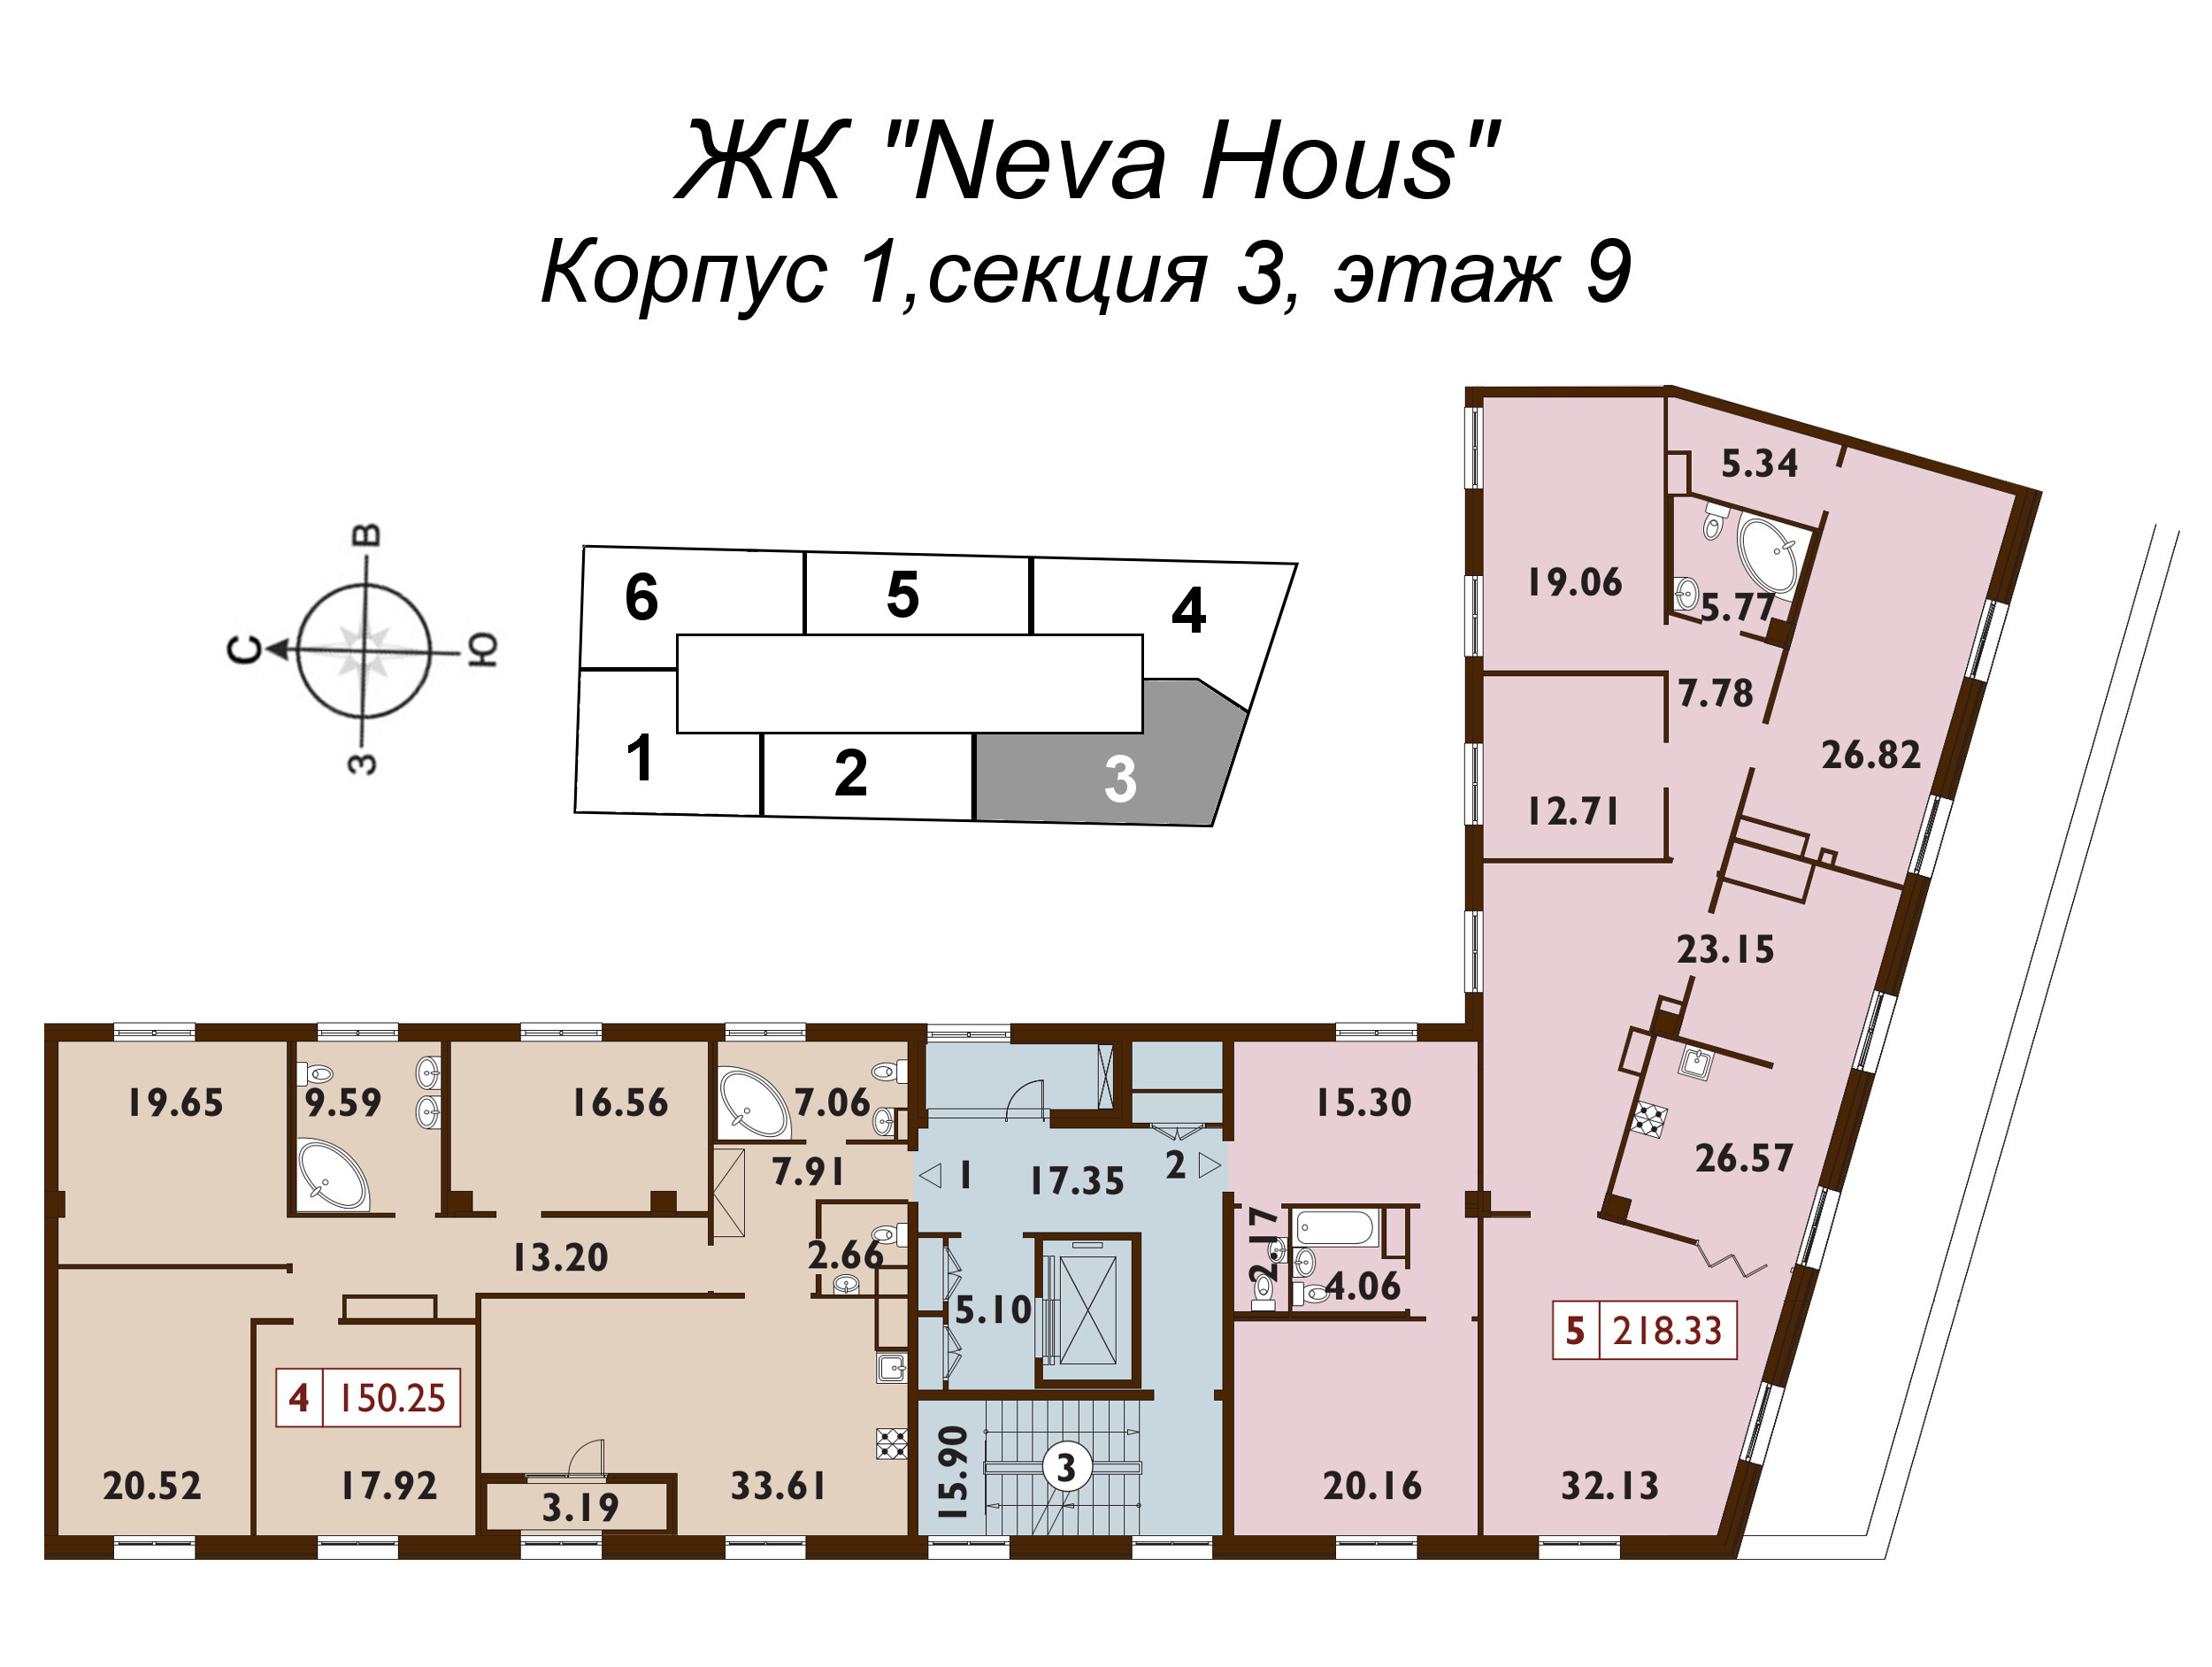 5-комнатная (Евро) квартира, 150.5 м² в ЖК "Neva Haus" - планировка этажа